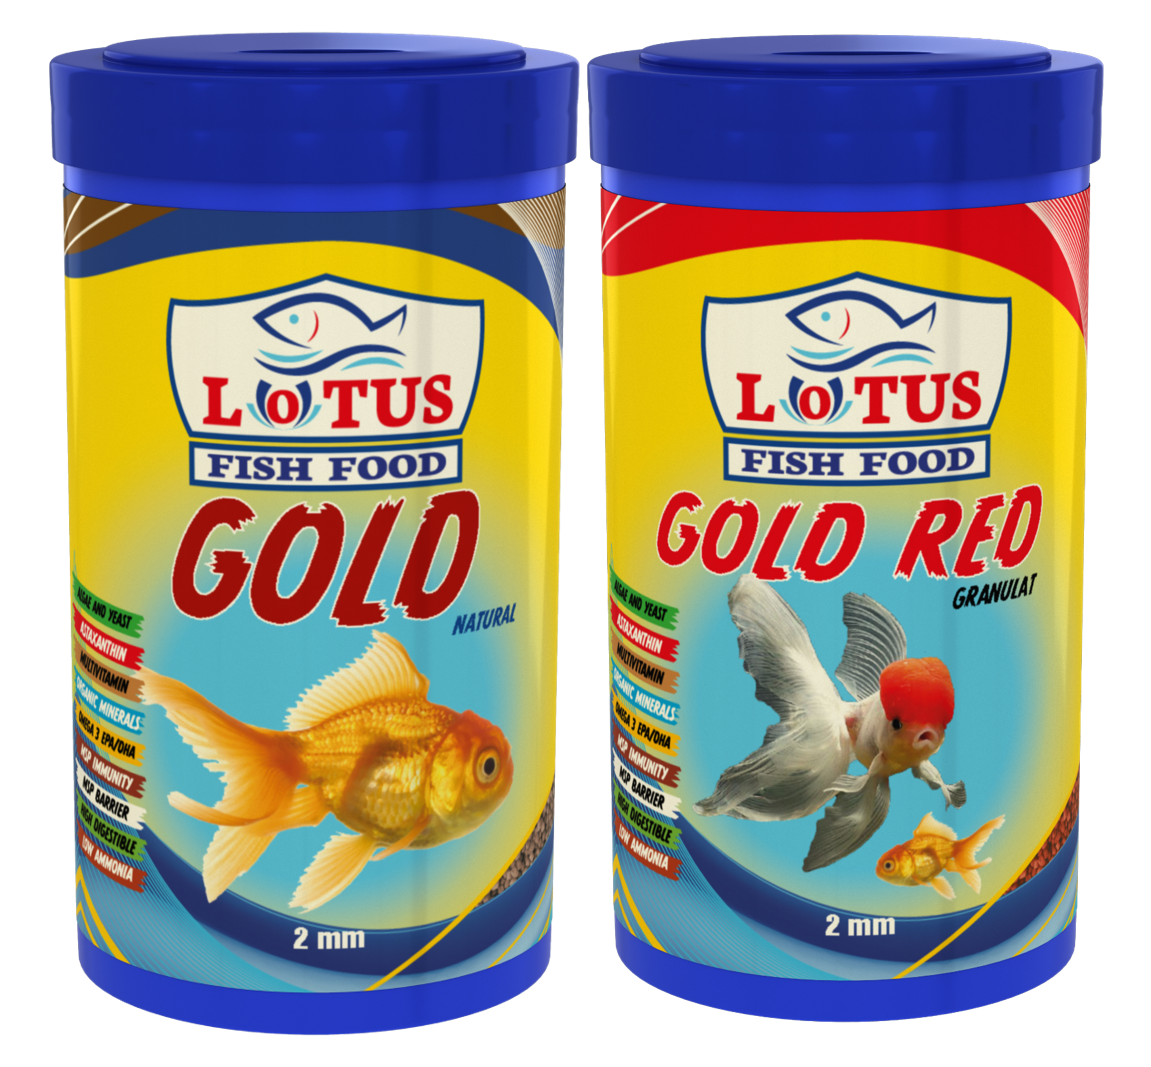 Lotus Japon Balığı Yem ve Berraklaştırıcı Seti, Lotus 100ml Gold Natural, Red ve Mix